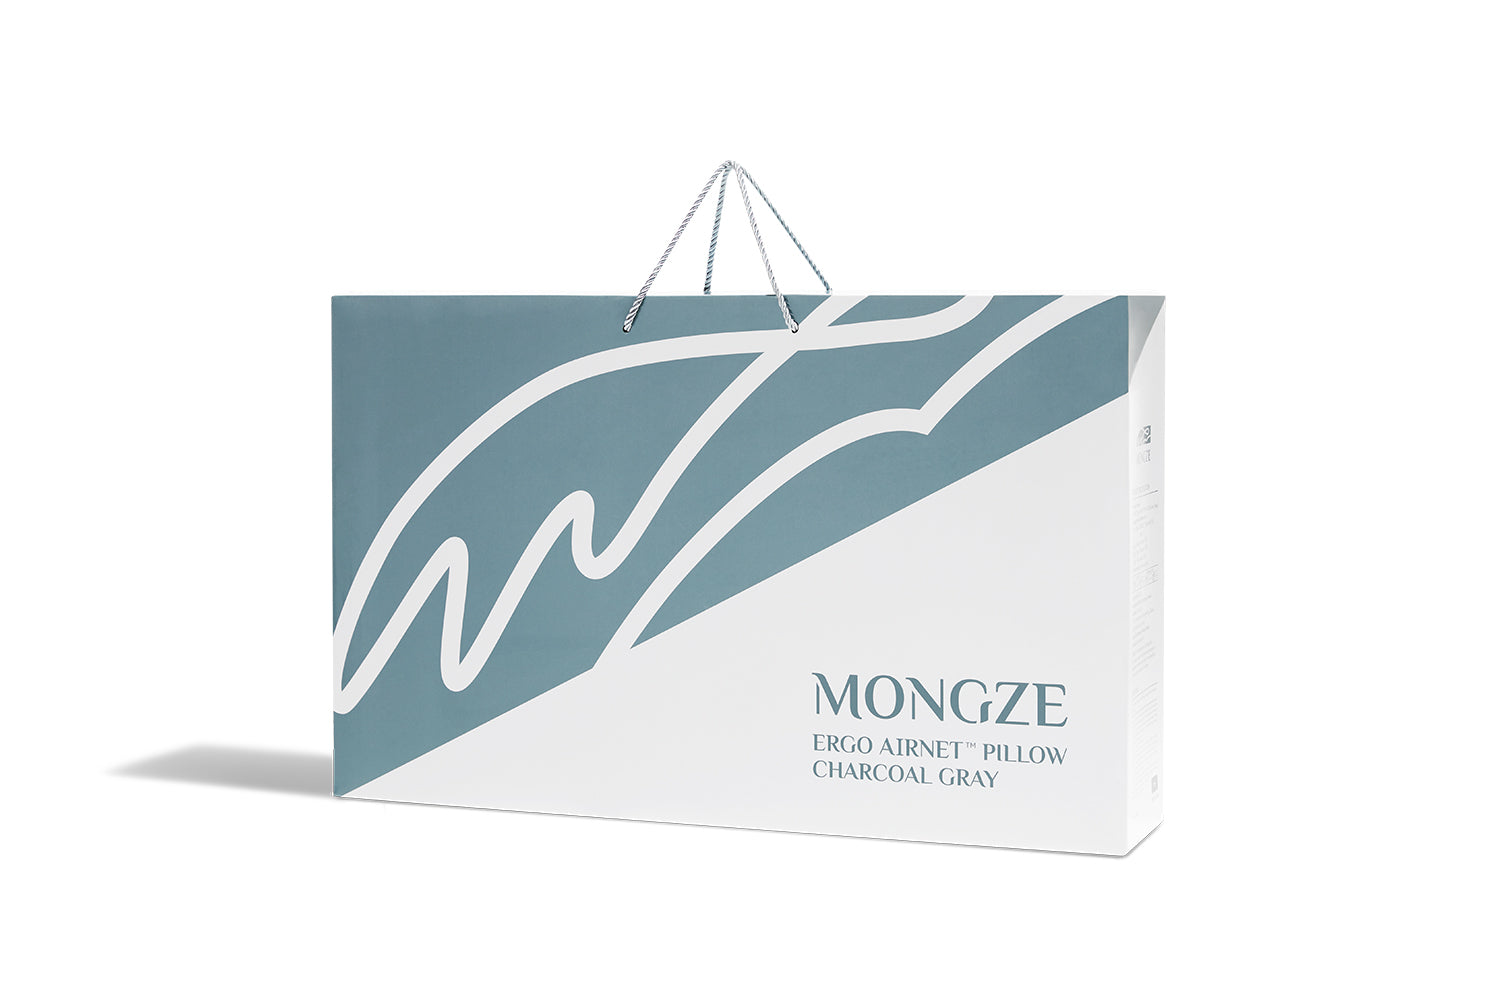 MONGZE Ergo Airnet™ Pillow - mongze